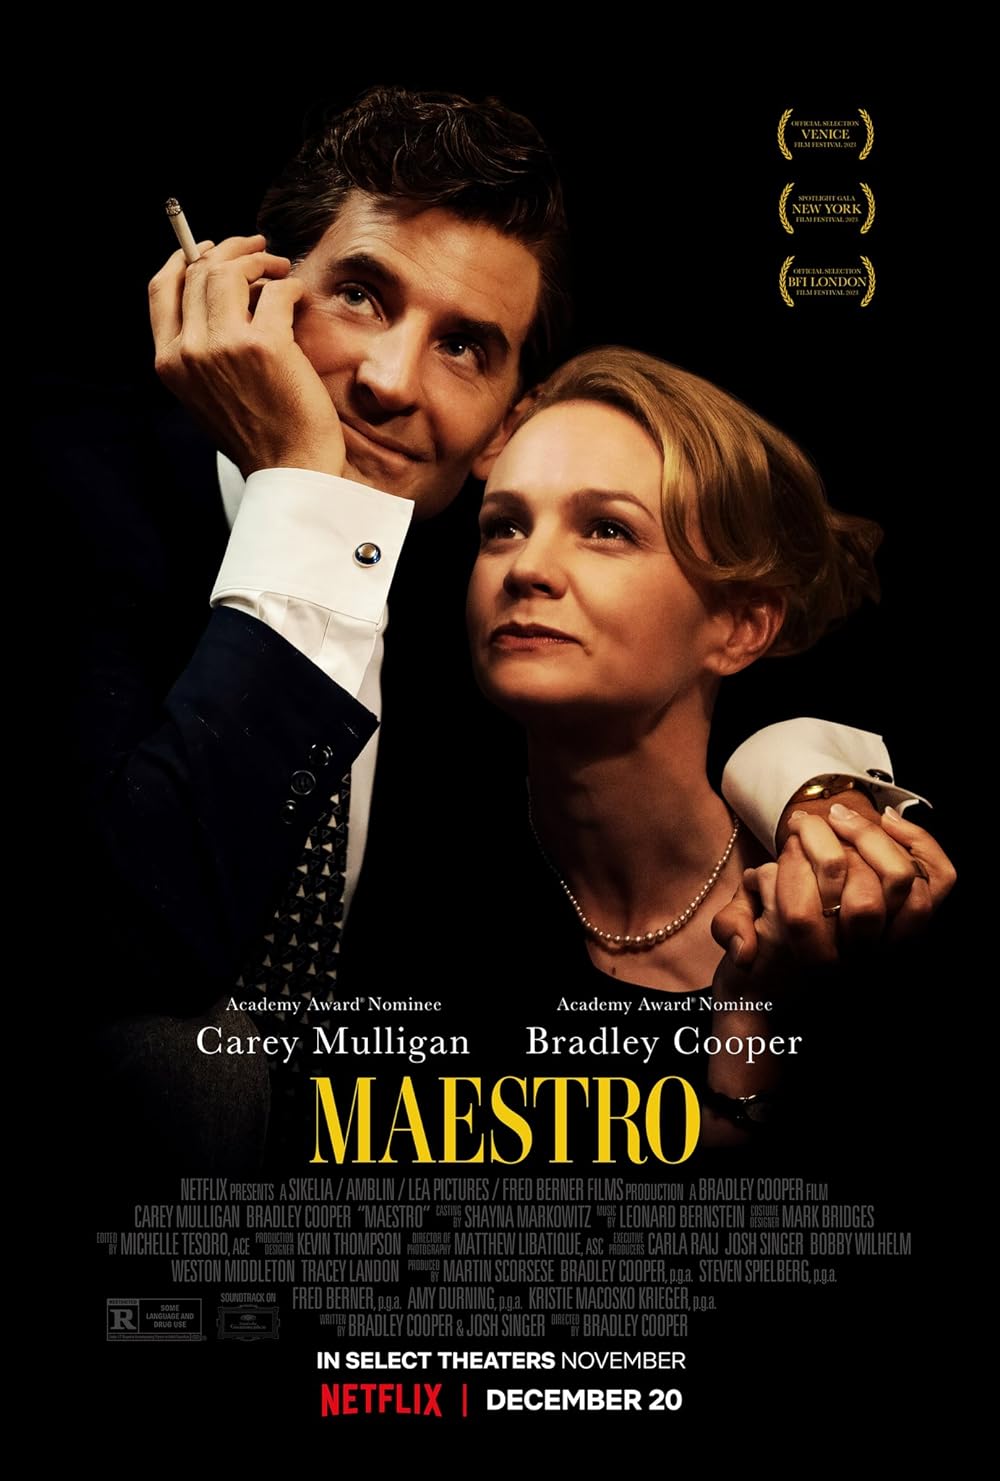 Bradley Cooper in “Maestro”